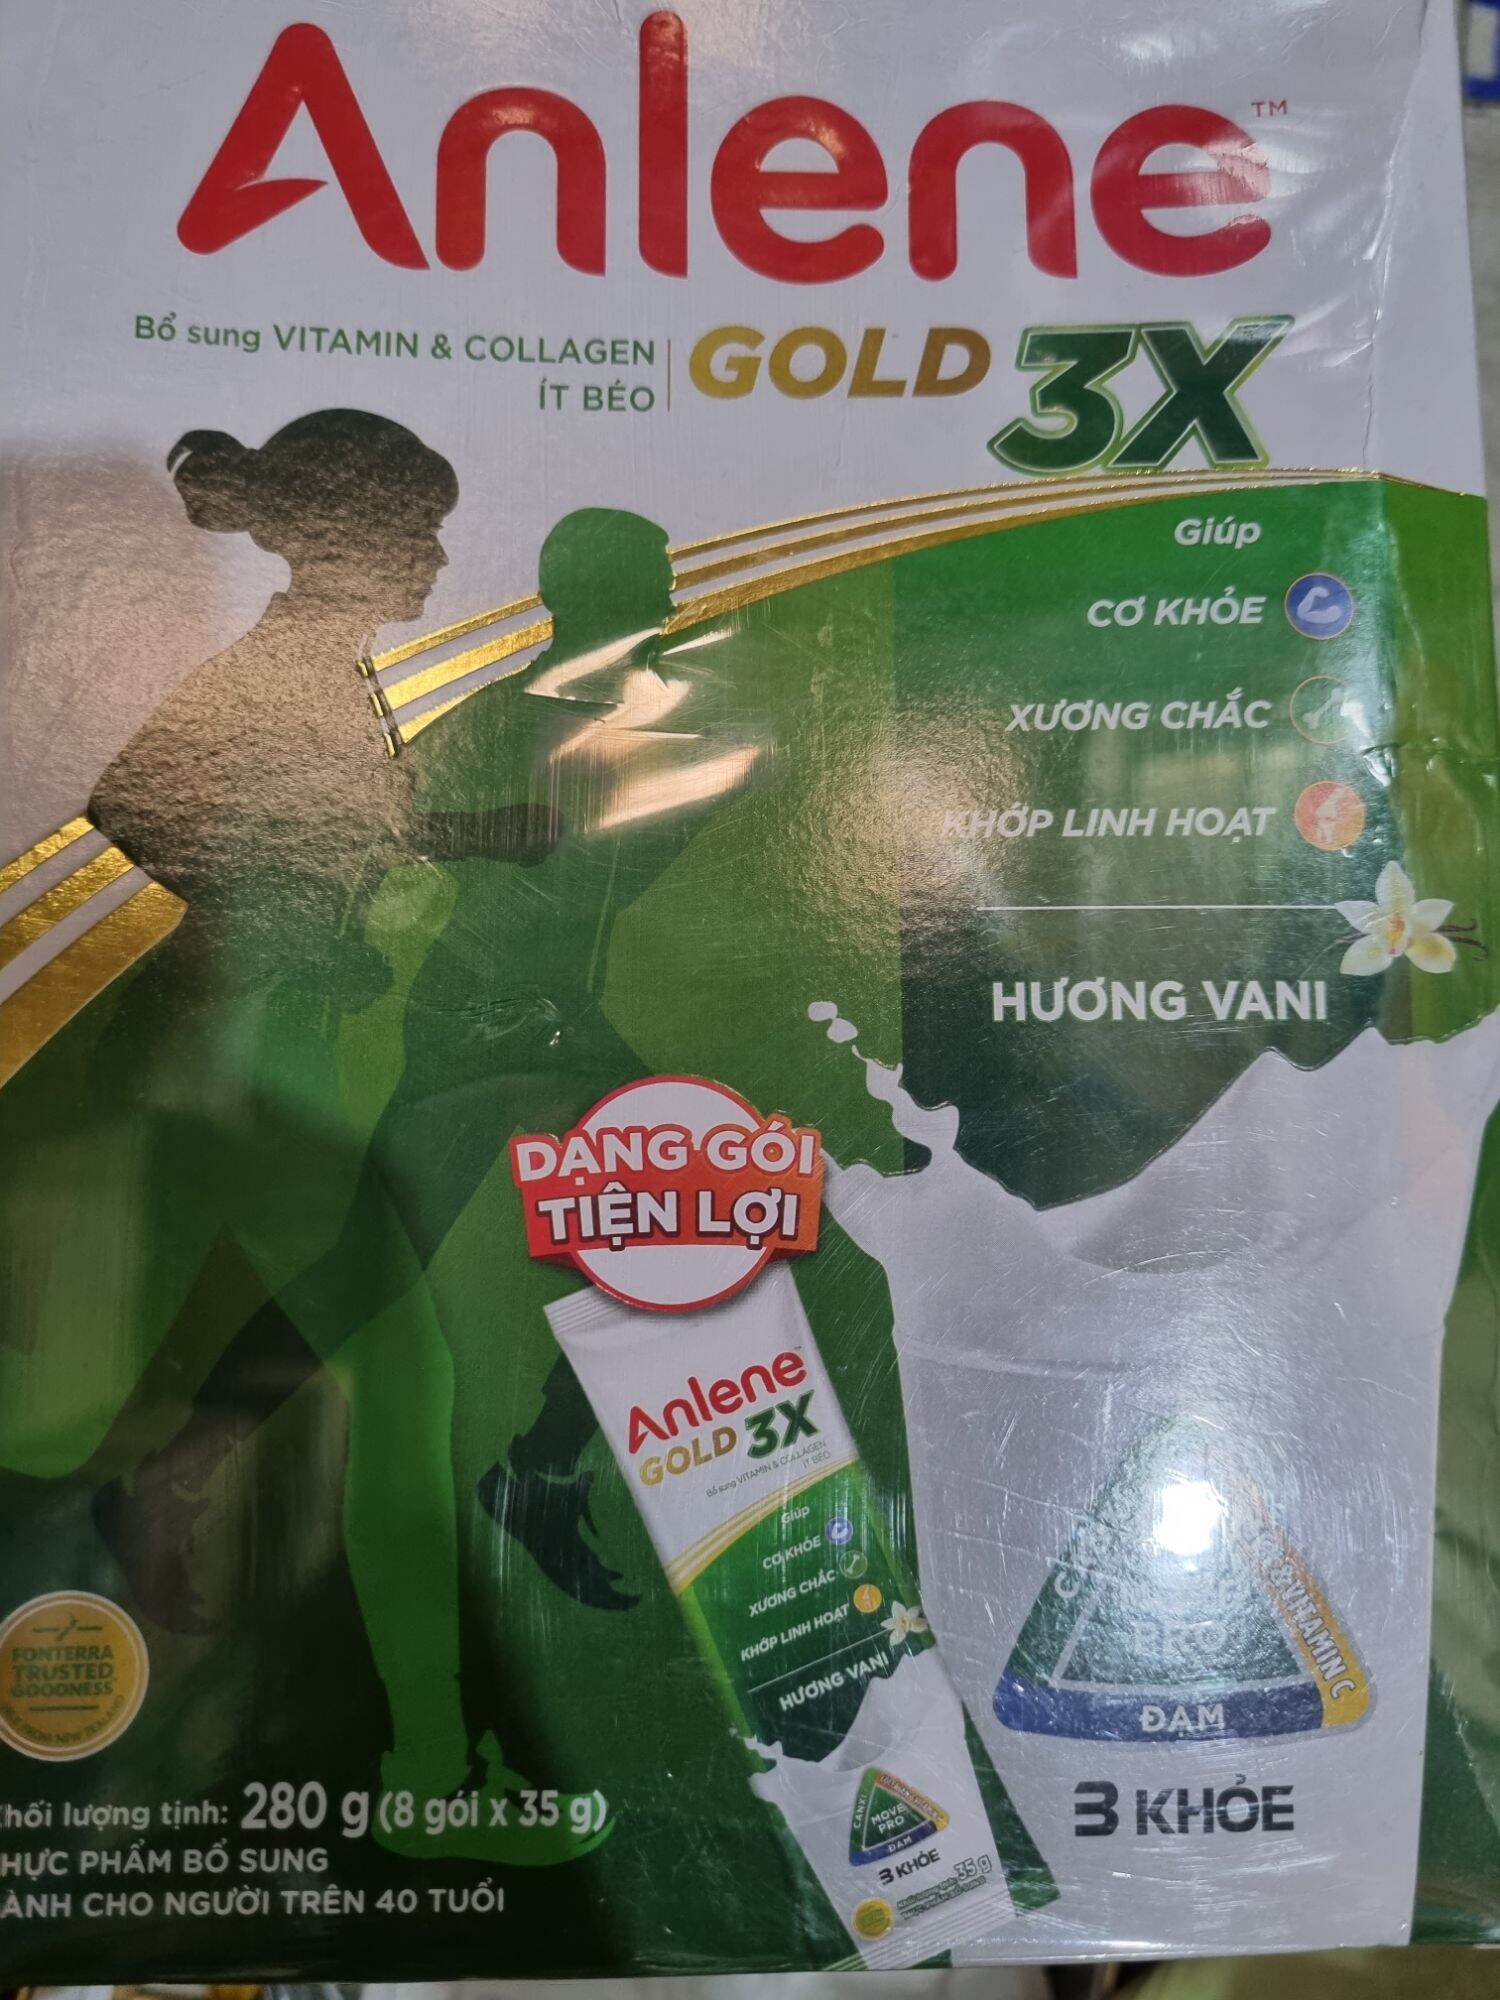 Sữa Anlene Gold 3x hương Vani 35g (mẫu gói du lịch tiện lợi)